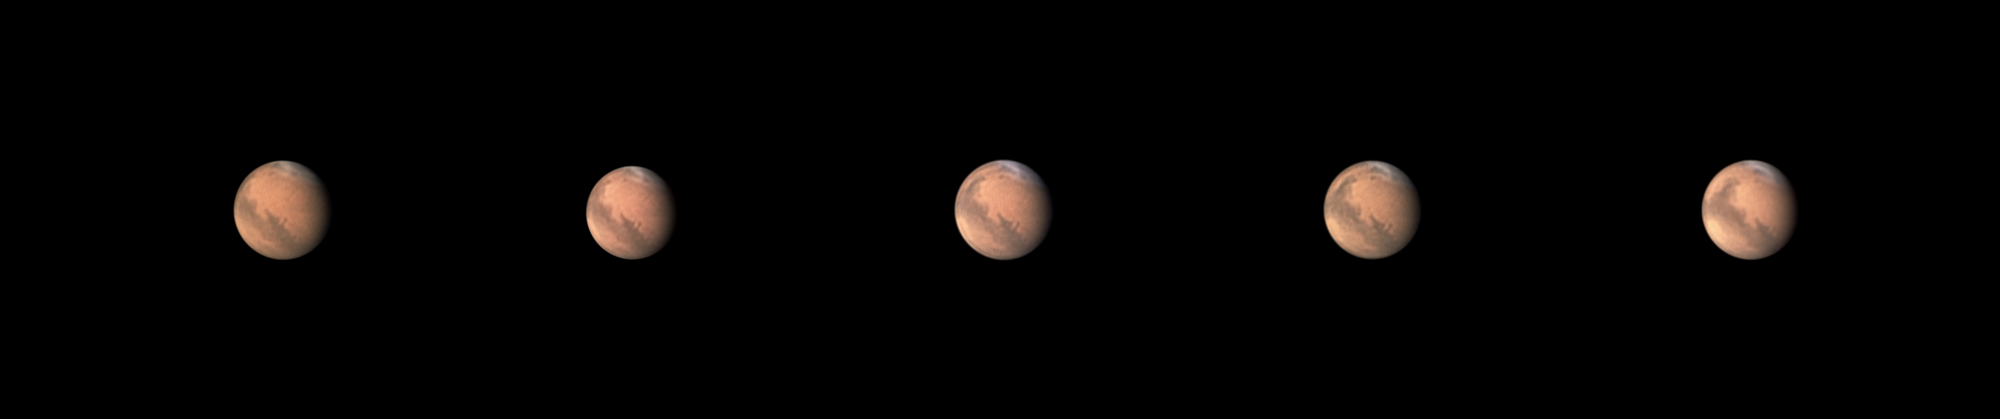 Mars30-10-2022.thumb.png.1aaff7cf49acaec8d074a8c82d7e6a9e.png